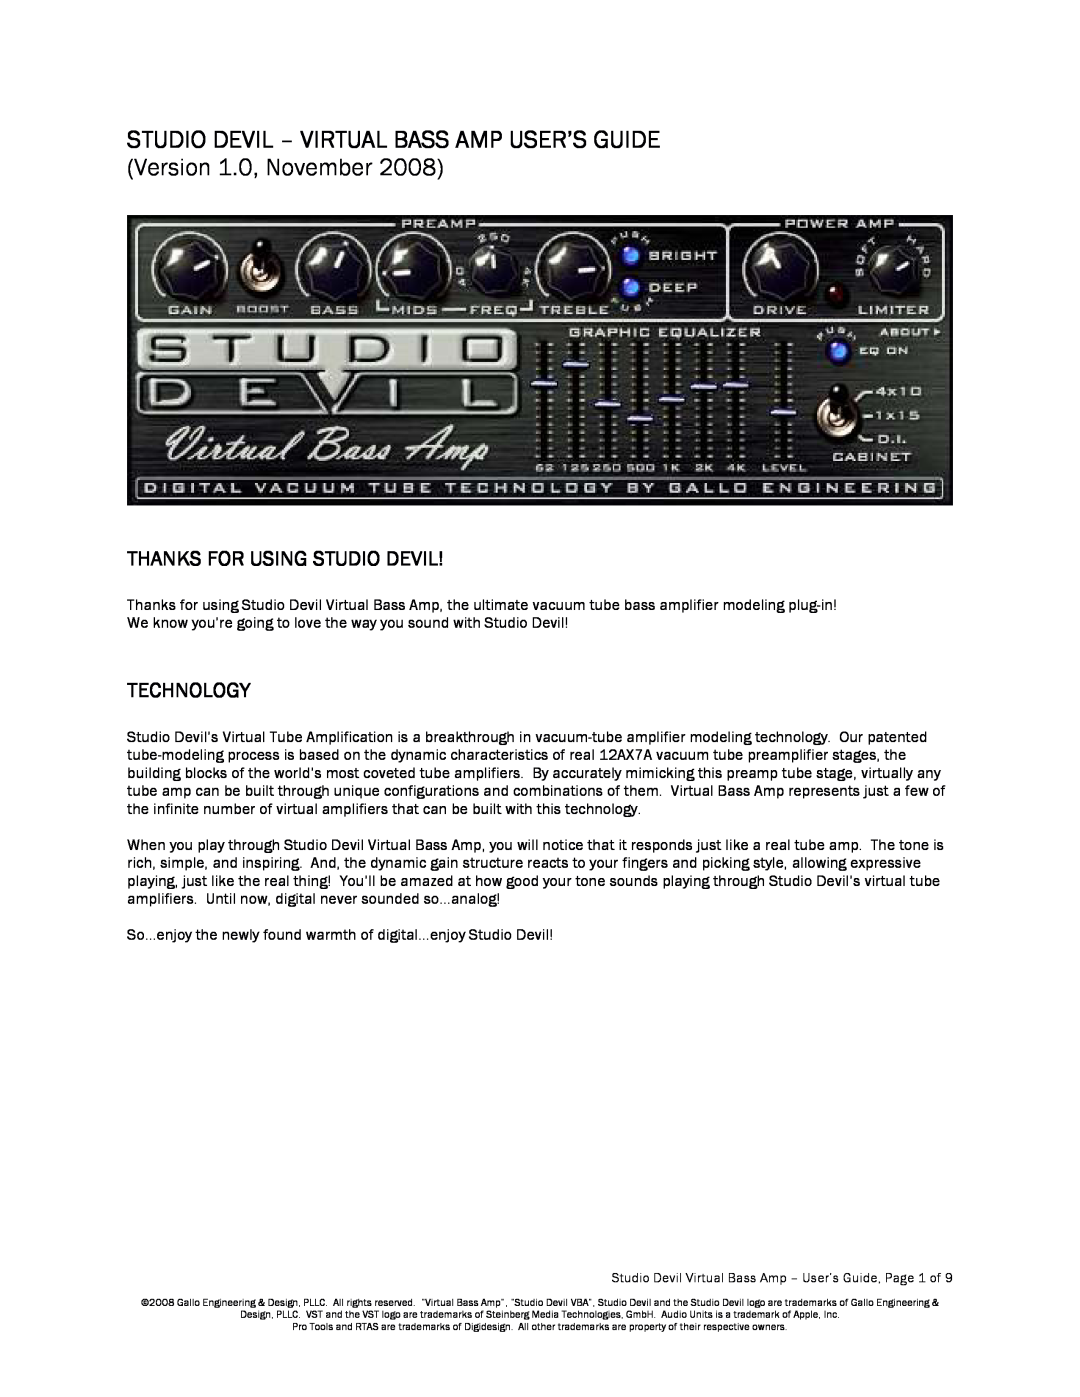 Apple manual Thanks For Using Studio Devil, Technology, Studio Devil - Virtual Bass Amp User’S Guide 